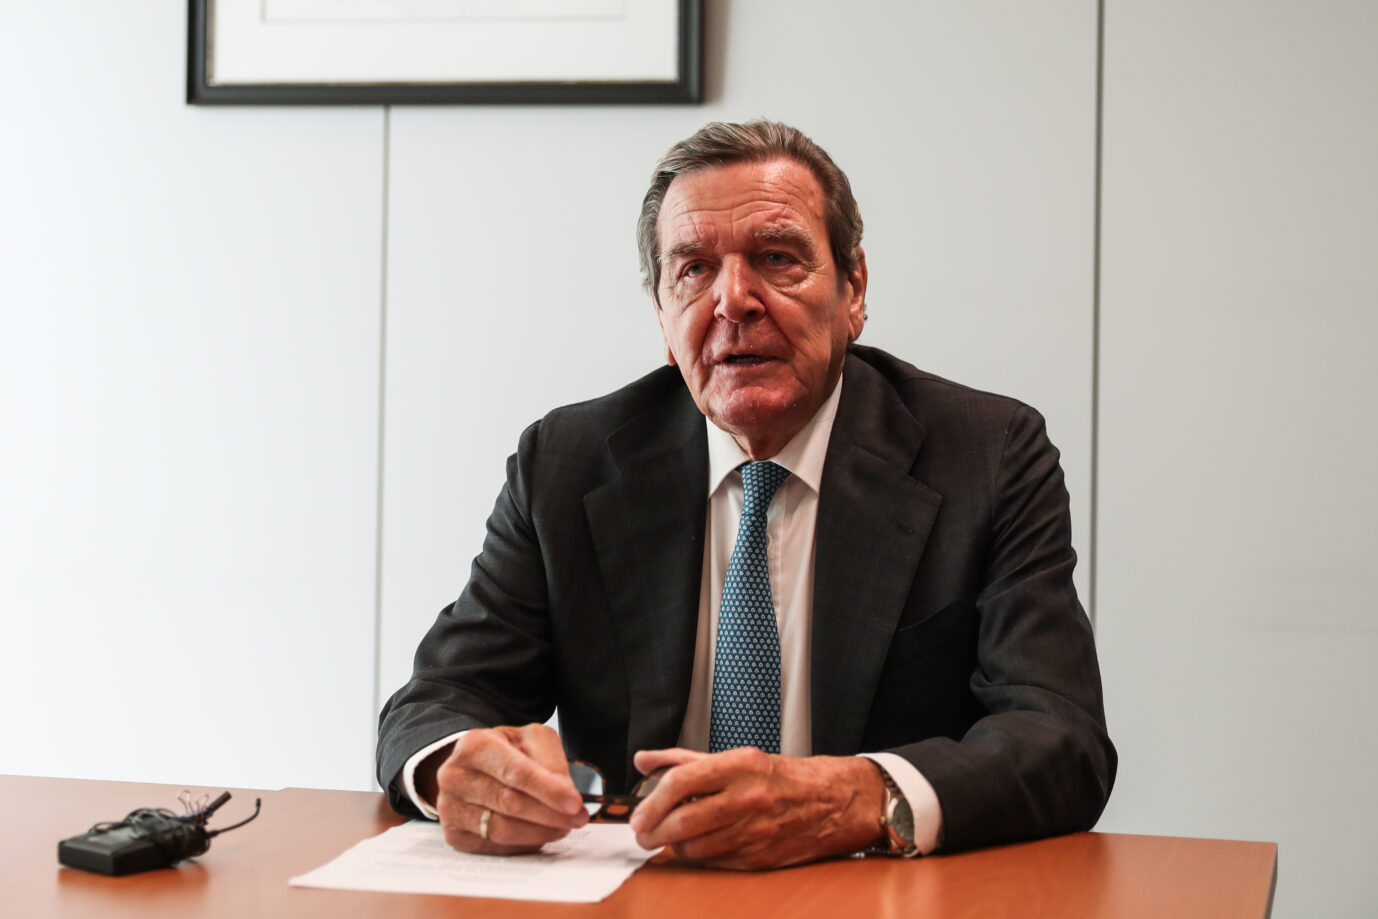 Ex-Bundeskanzler Gerhard Schröder bleibt in der SPD. Kritiker werfen ihm seit Monaten vor, sich nicht von seinem Freund Wladimir Putin zu distanzieren Foto: picture alliance / Xinhua News Agency | Zhang Yuan